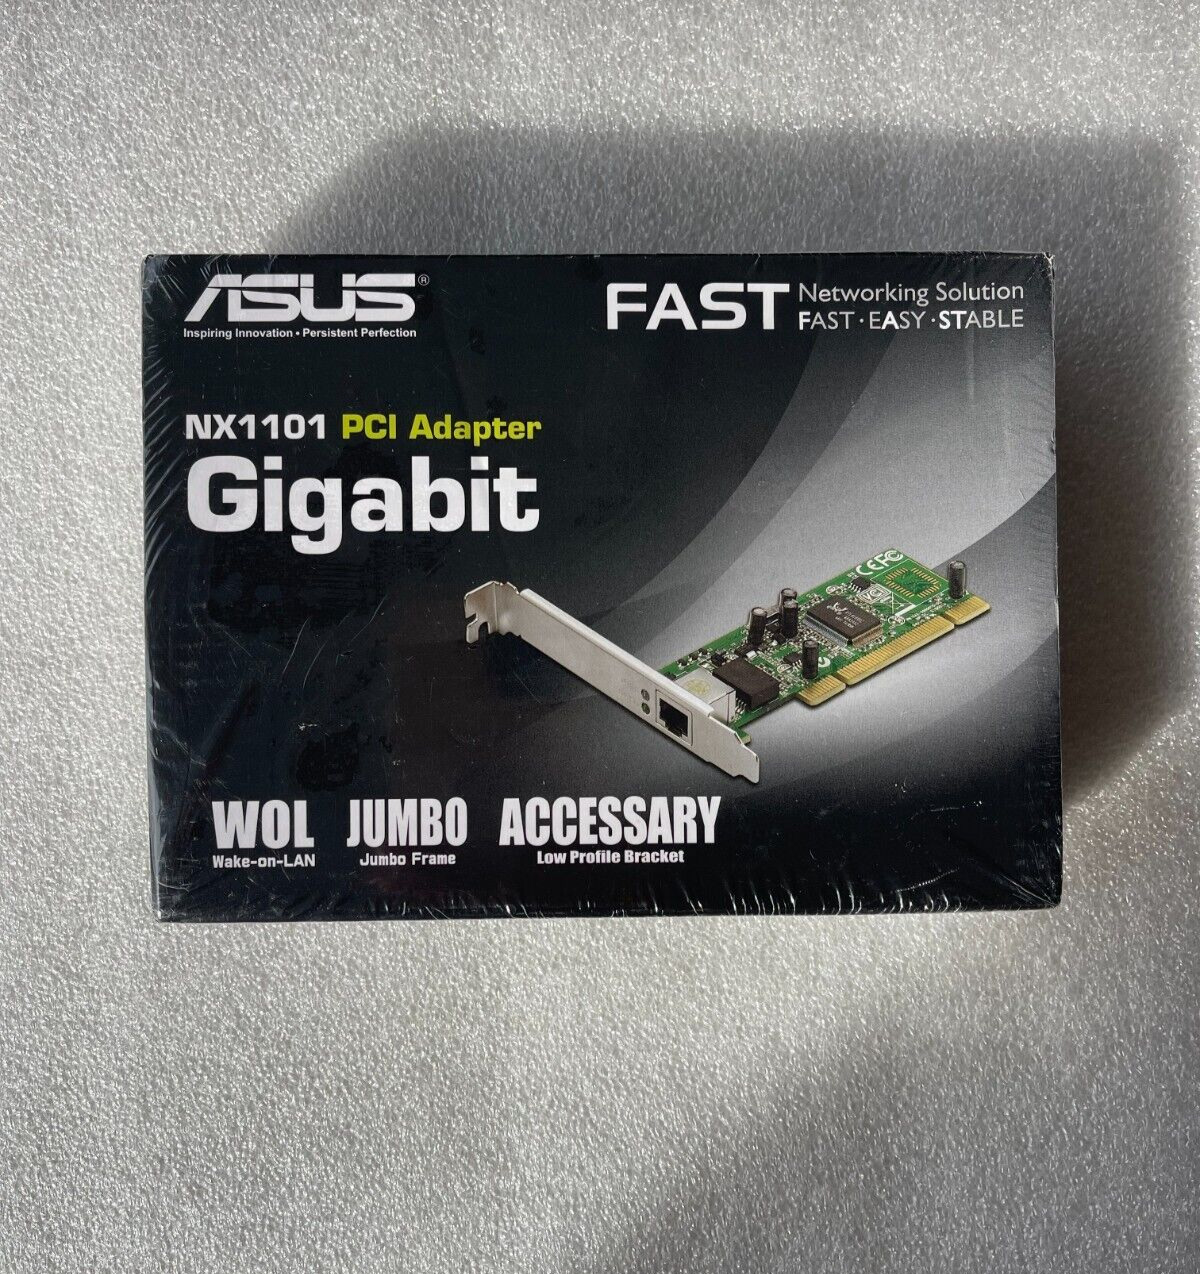 ASUS NX1101 PCI Adapter Gigabit Wake-On-LAN RJ-45 Connector Factory Sealed